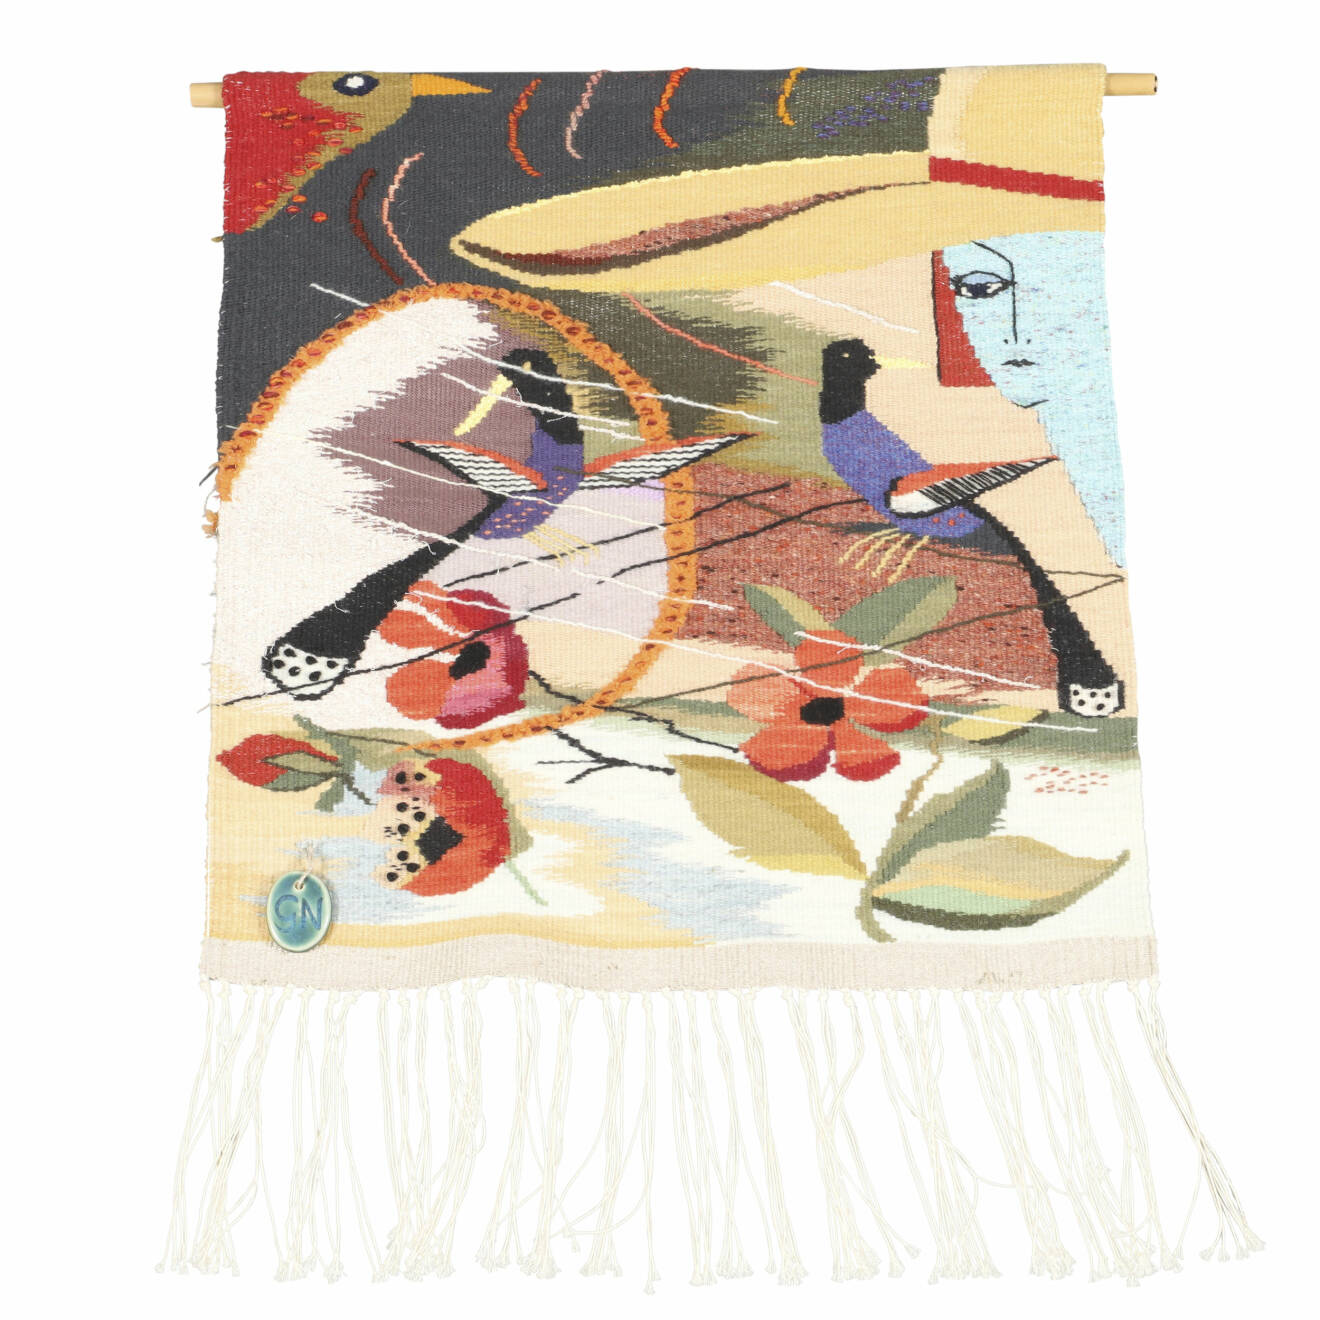 Väggbonad med fåglar, blommor och abstarkt mönster av Gunvor Nyman.